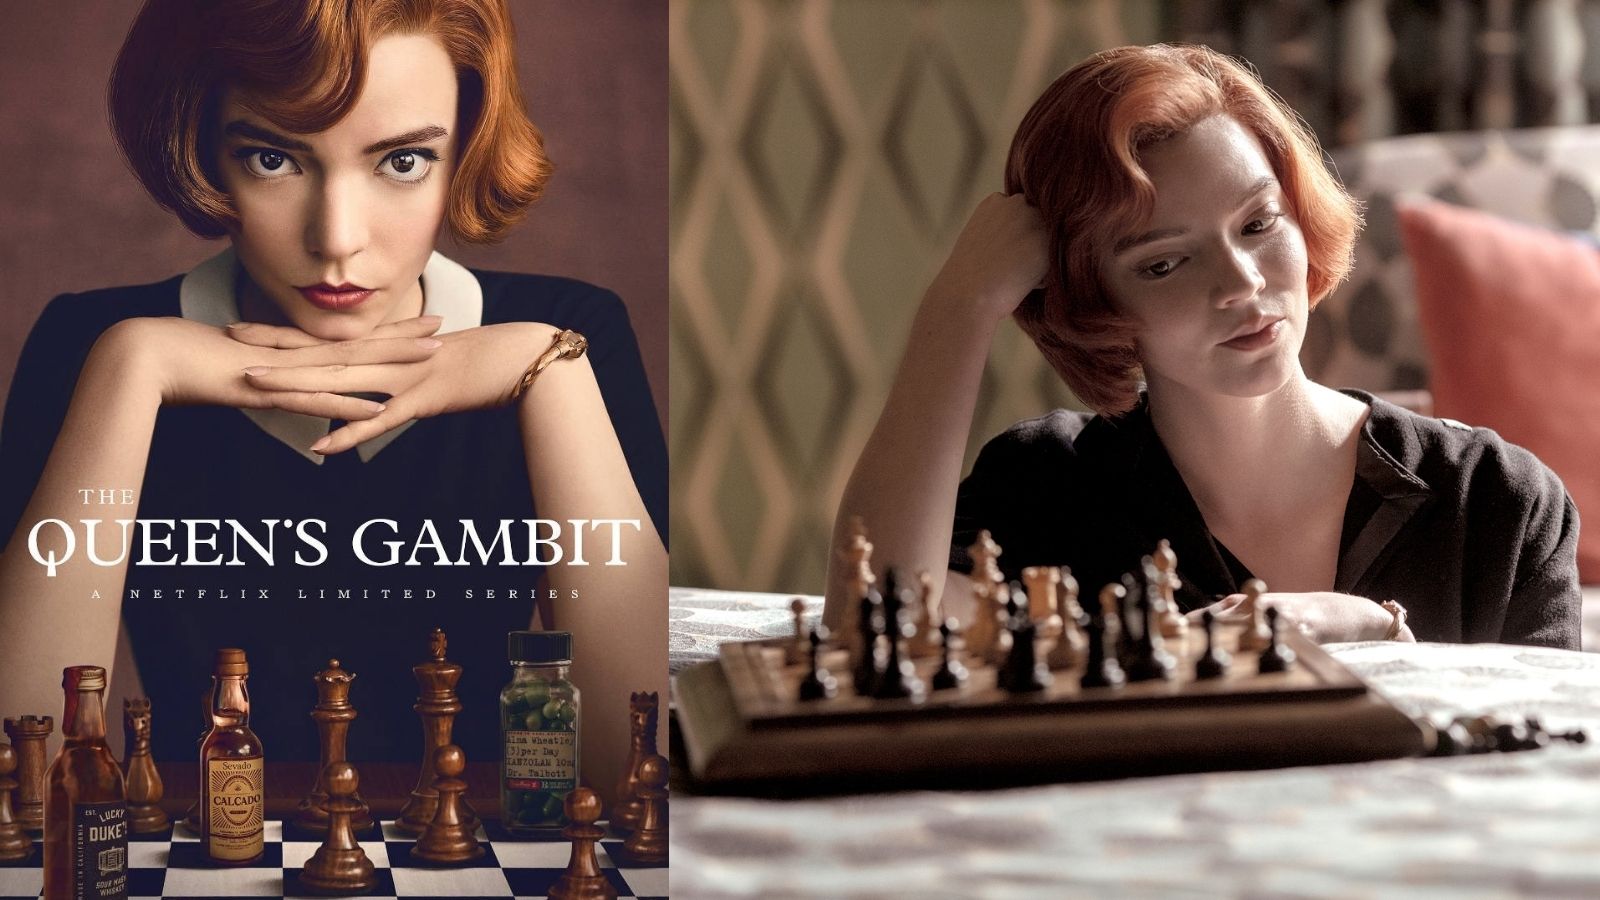 The Queen's Gambit Wallpapers (49+ images inside)